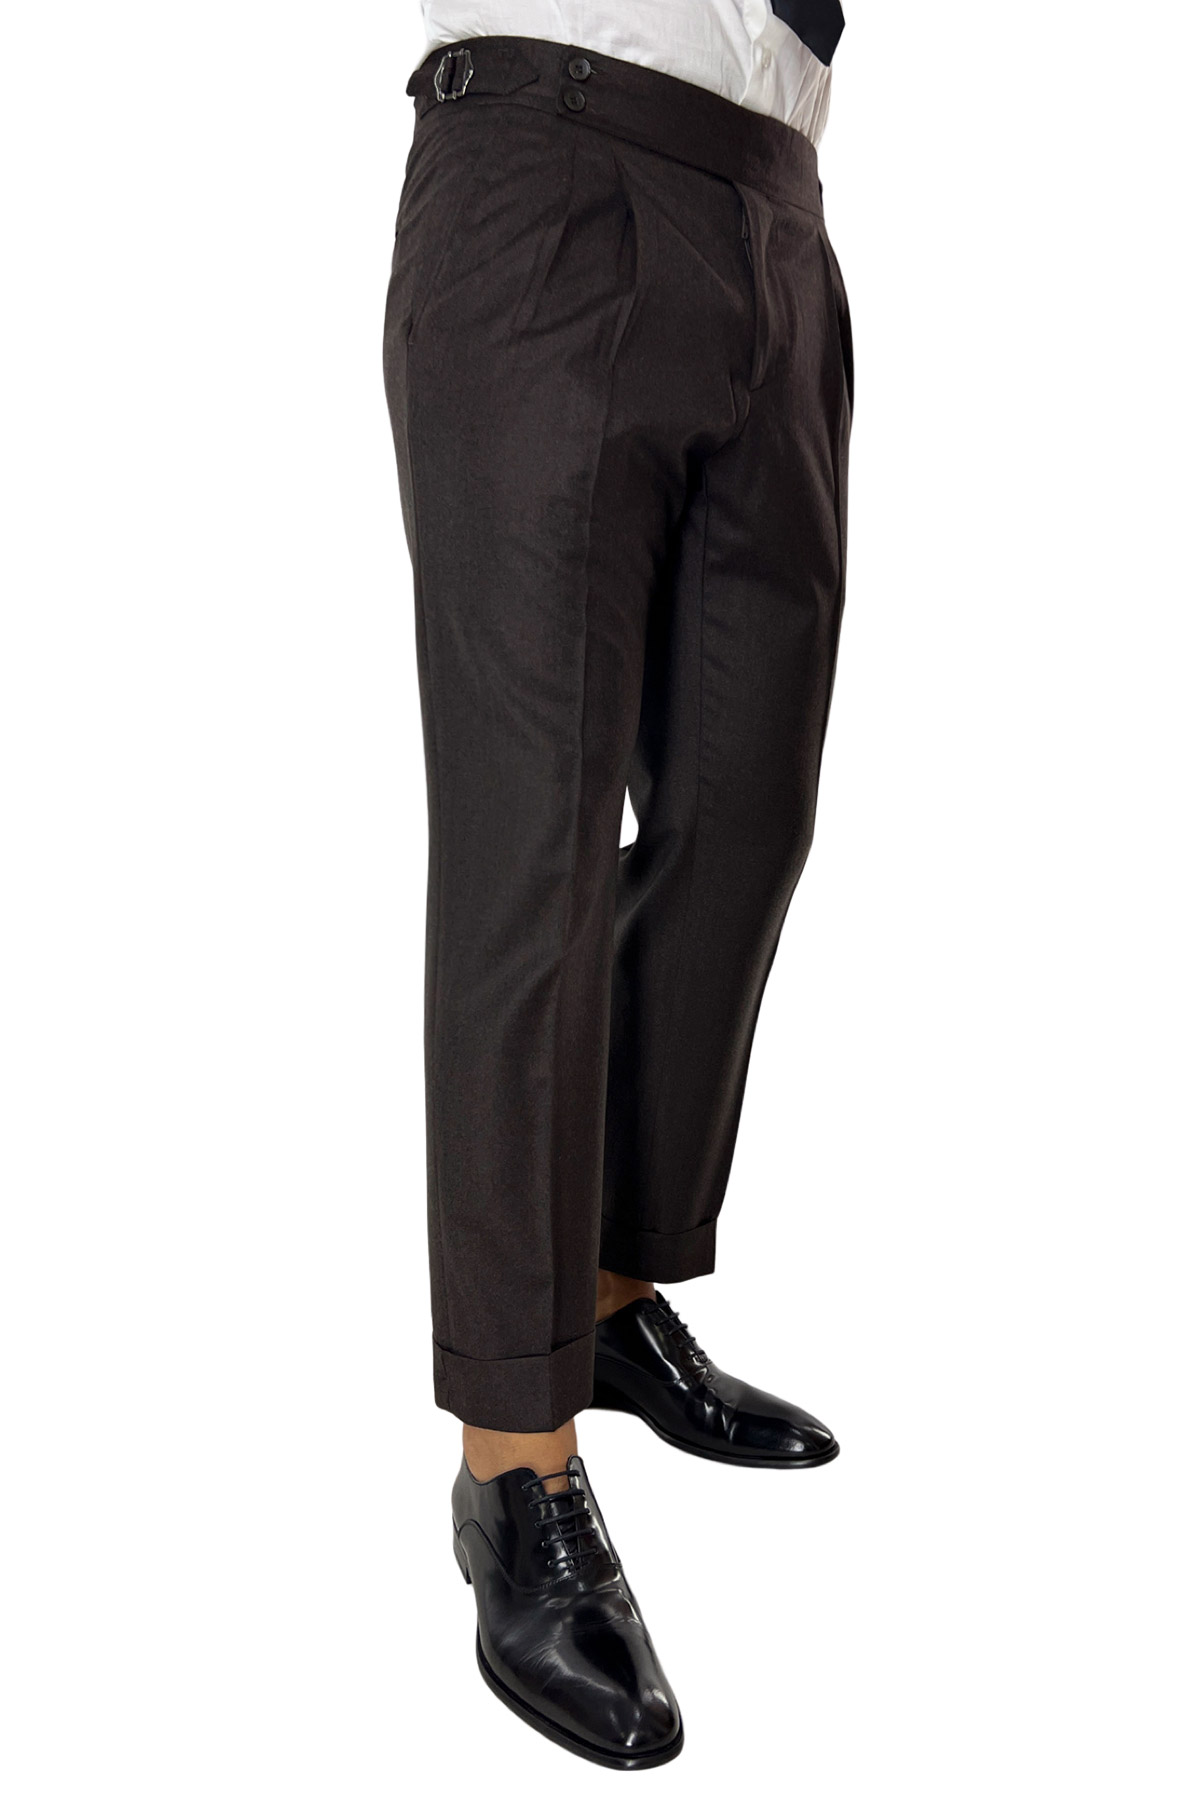 Pantalone uomo marrone vita alta tasca america in lana flanella con pinces e fibbie laterali Vitale Barberis Canonico